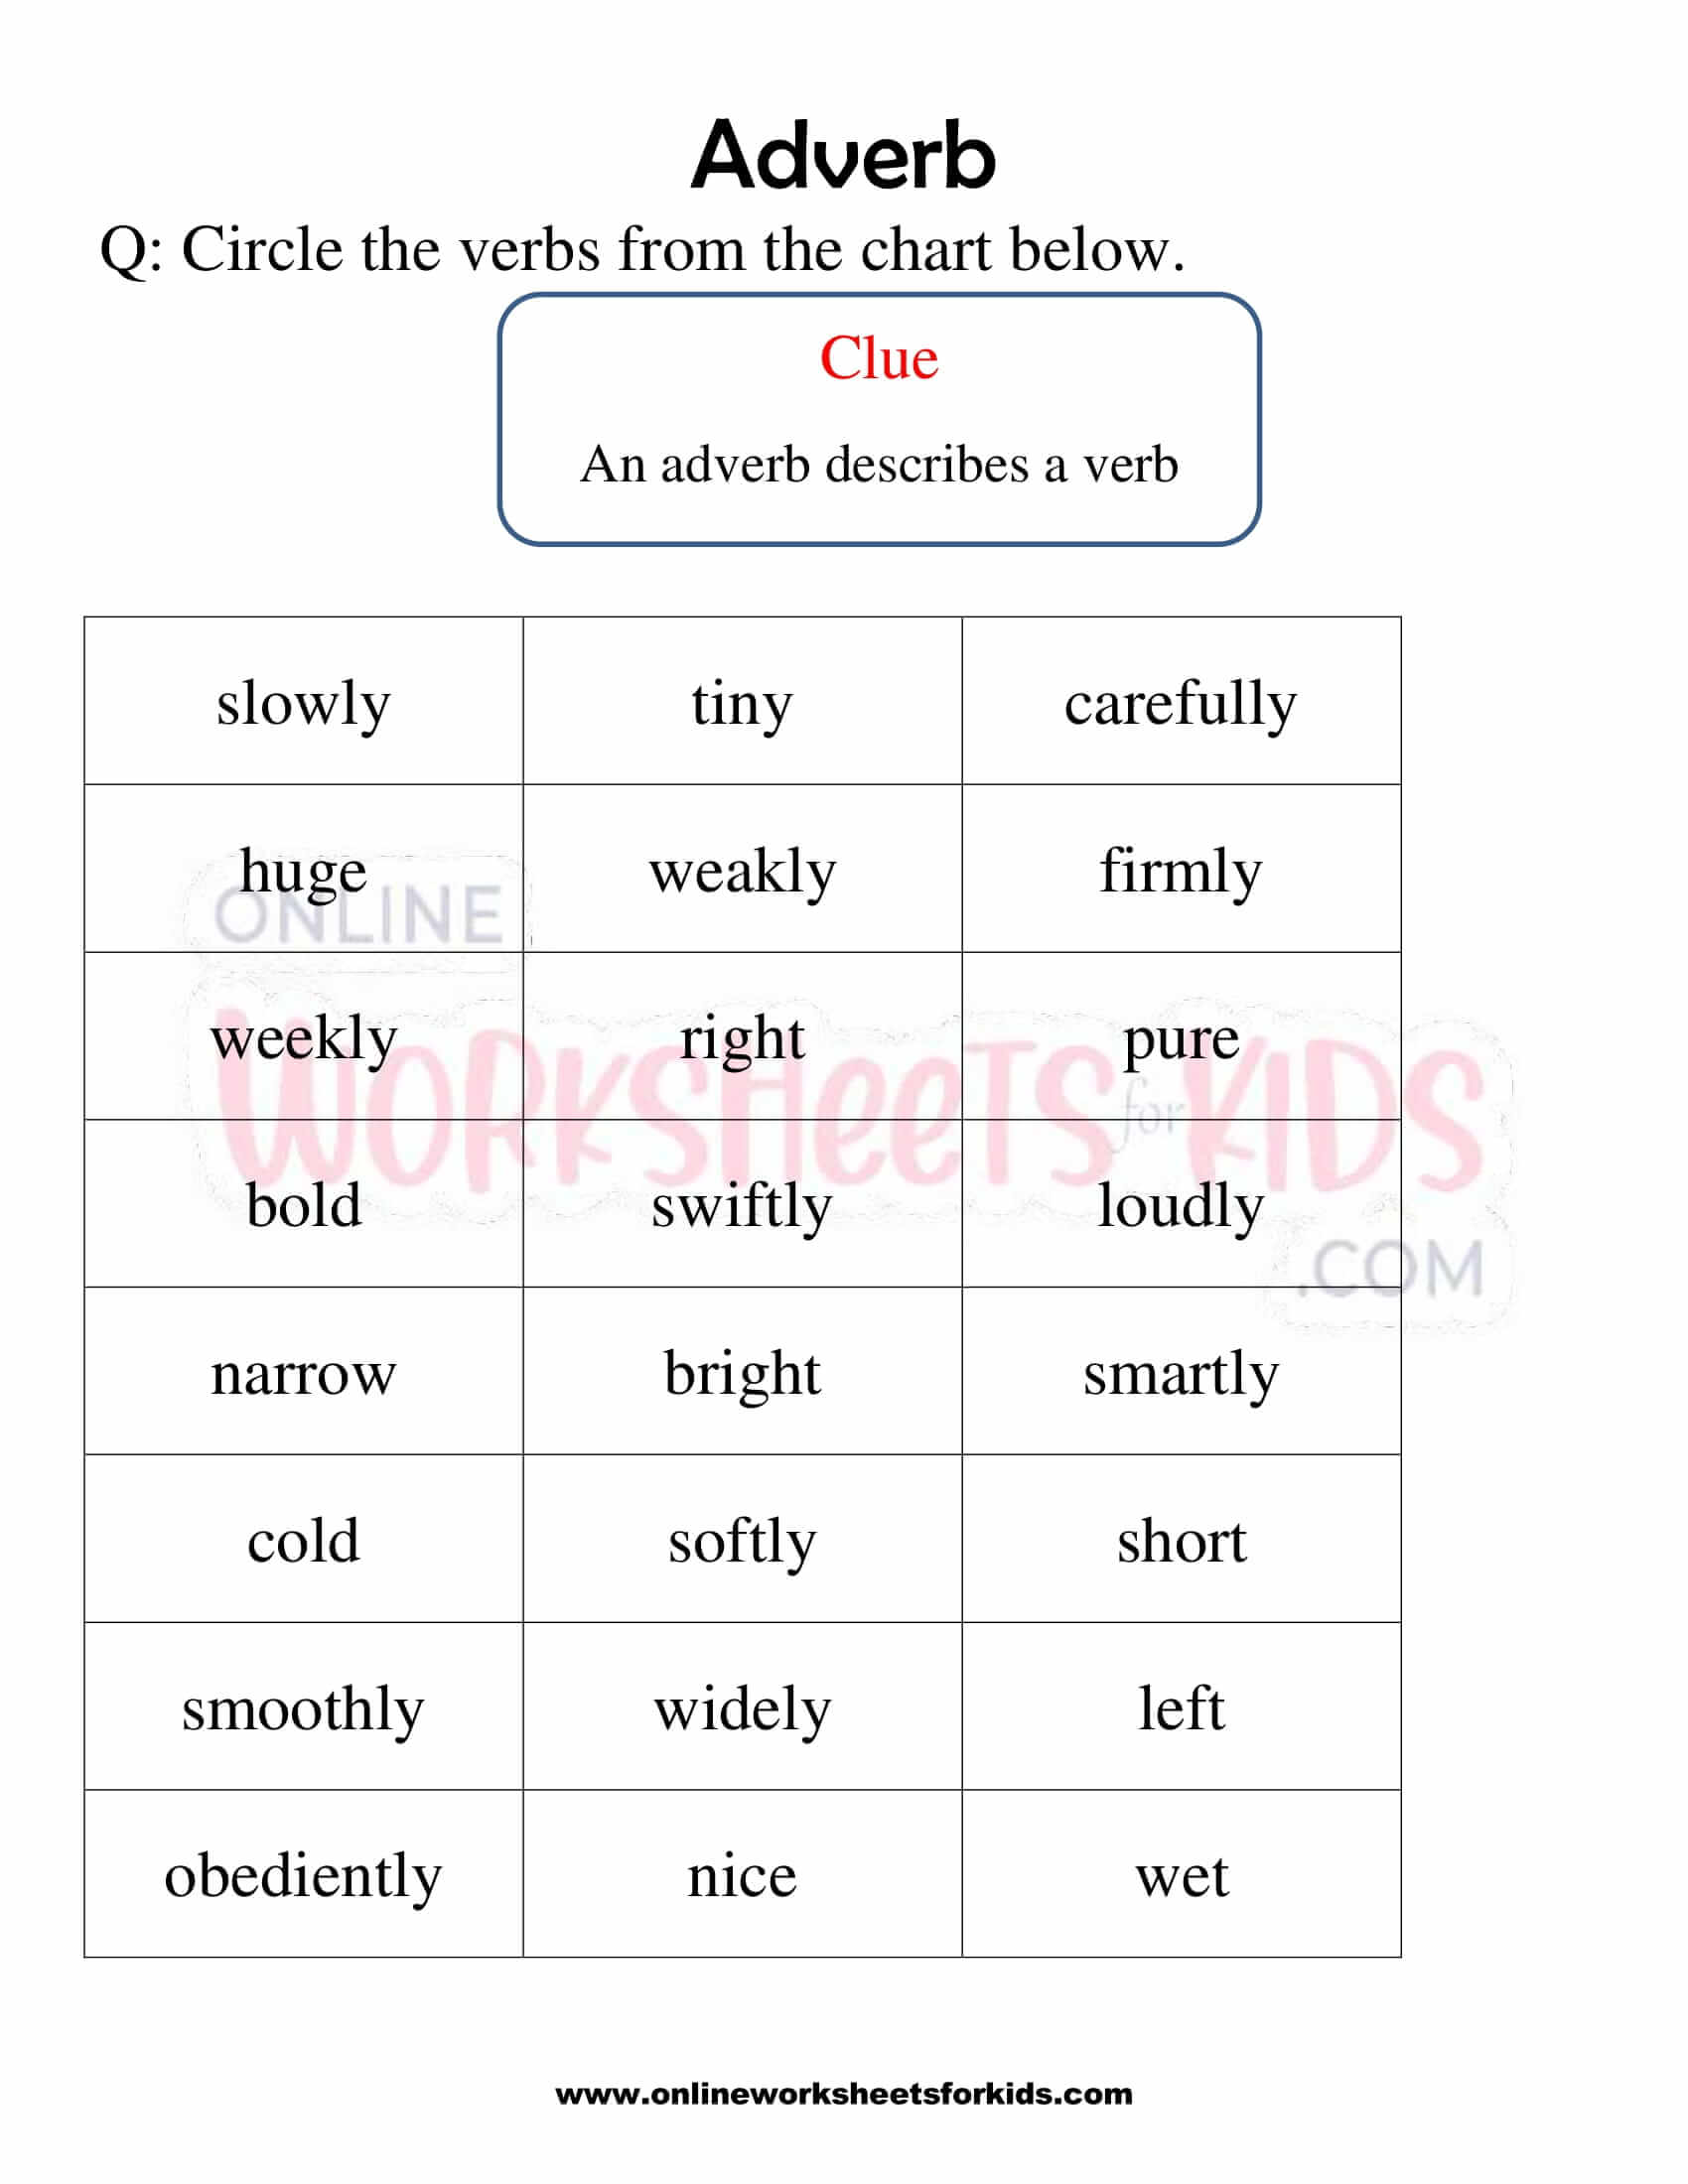 adverb-worksheet-for-grade-1-3